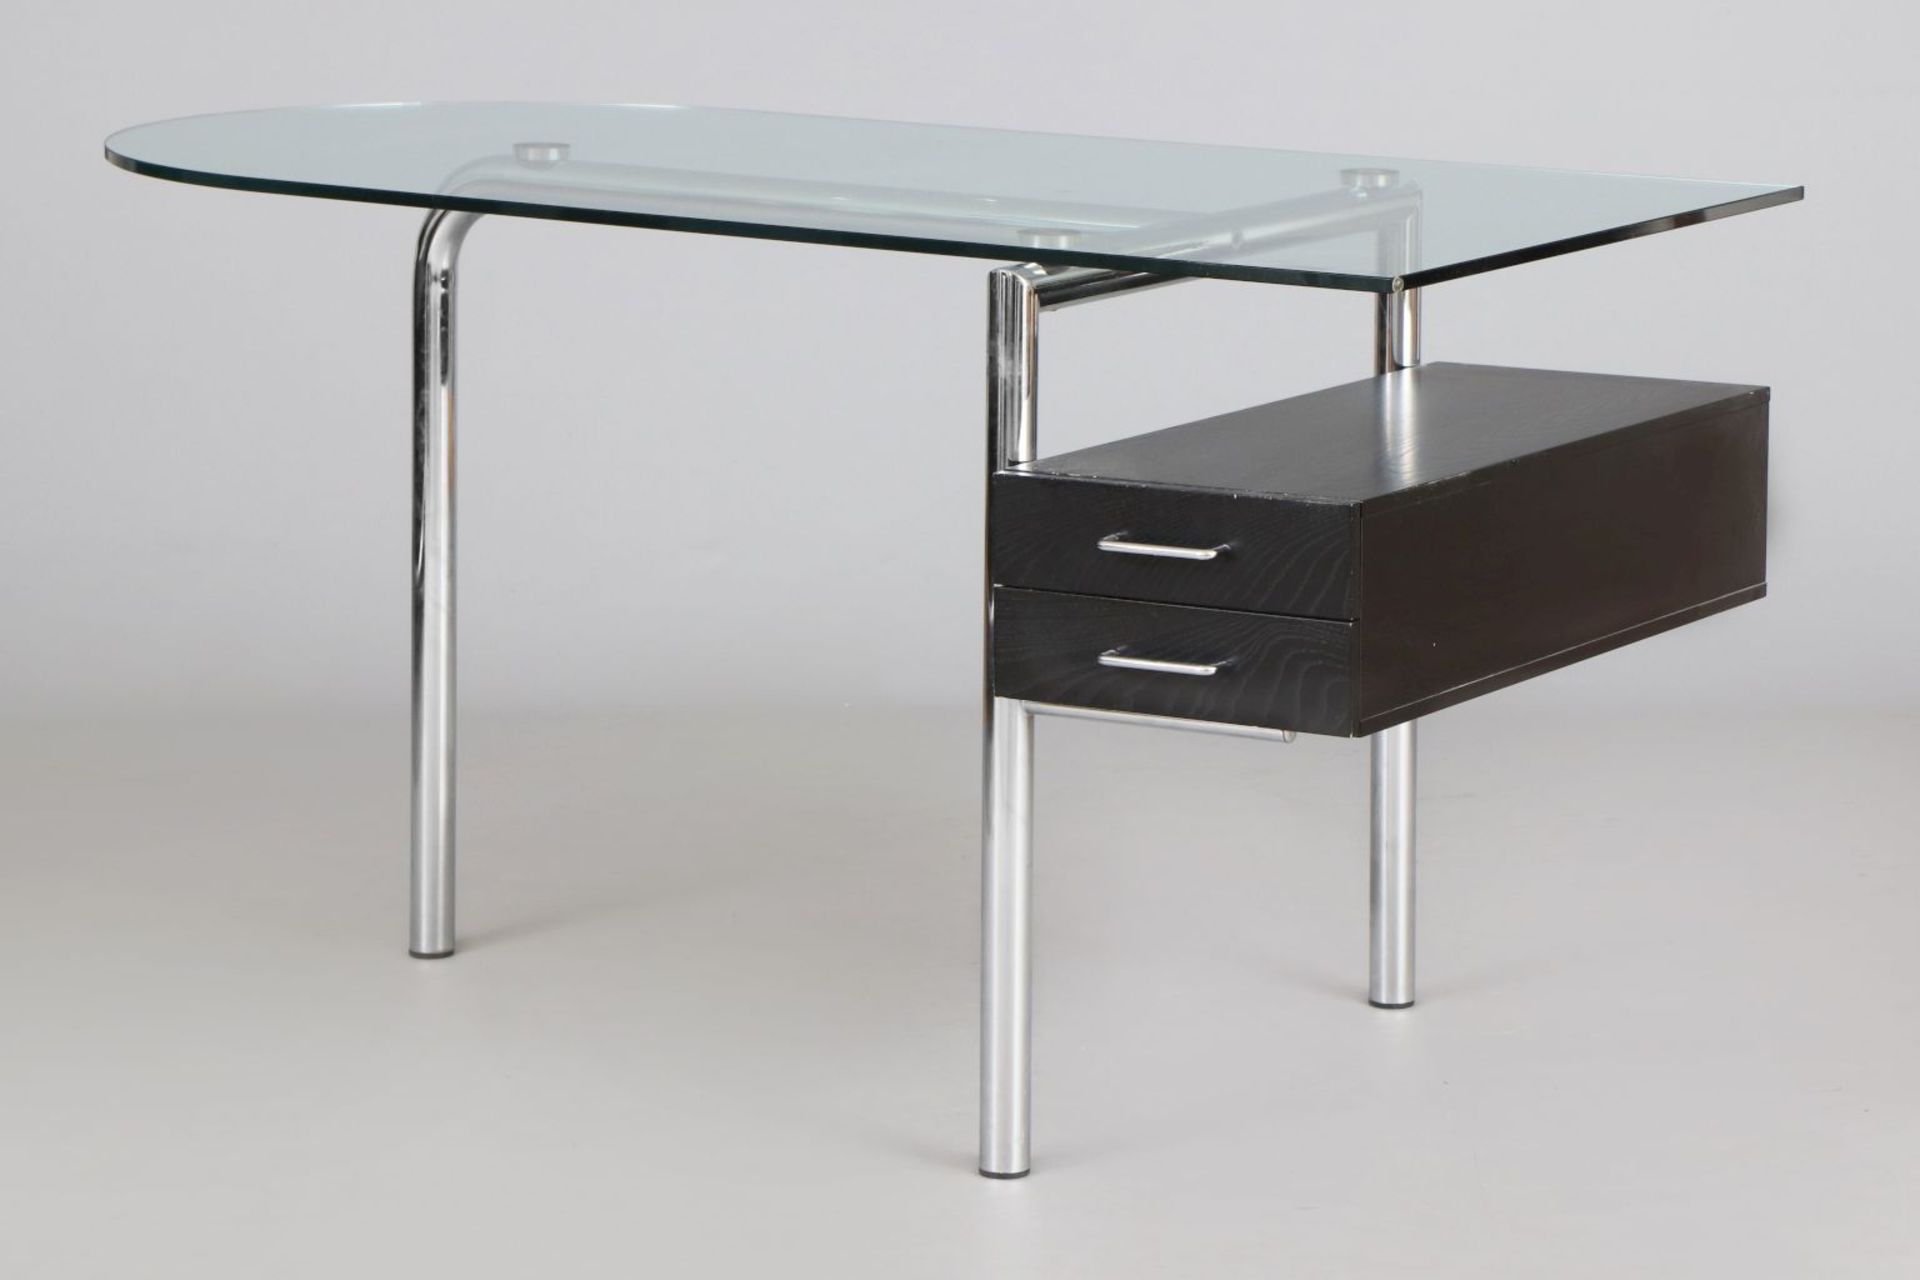 MIRTO Schreibtisch im Stile des Bauhausverchromtes Stahlrohr, Klarglasplatte, 2-schübiger Schu - Image 2 of 4